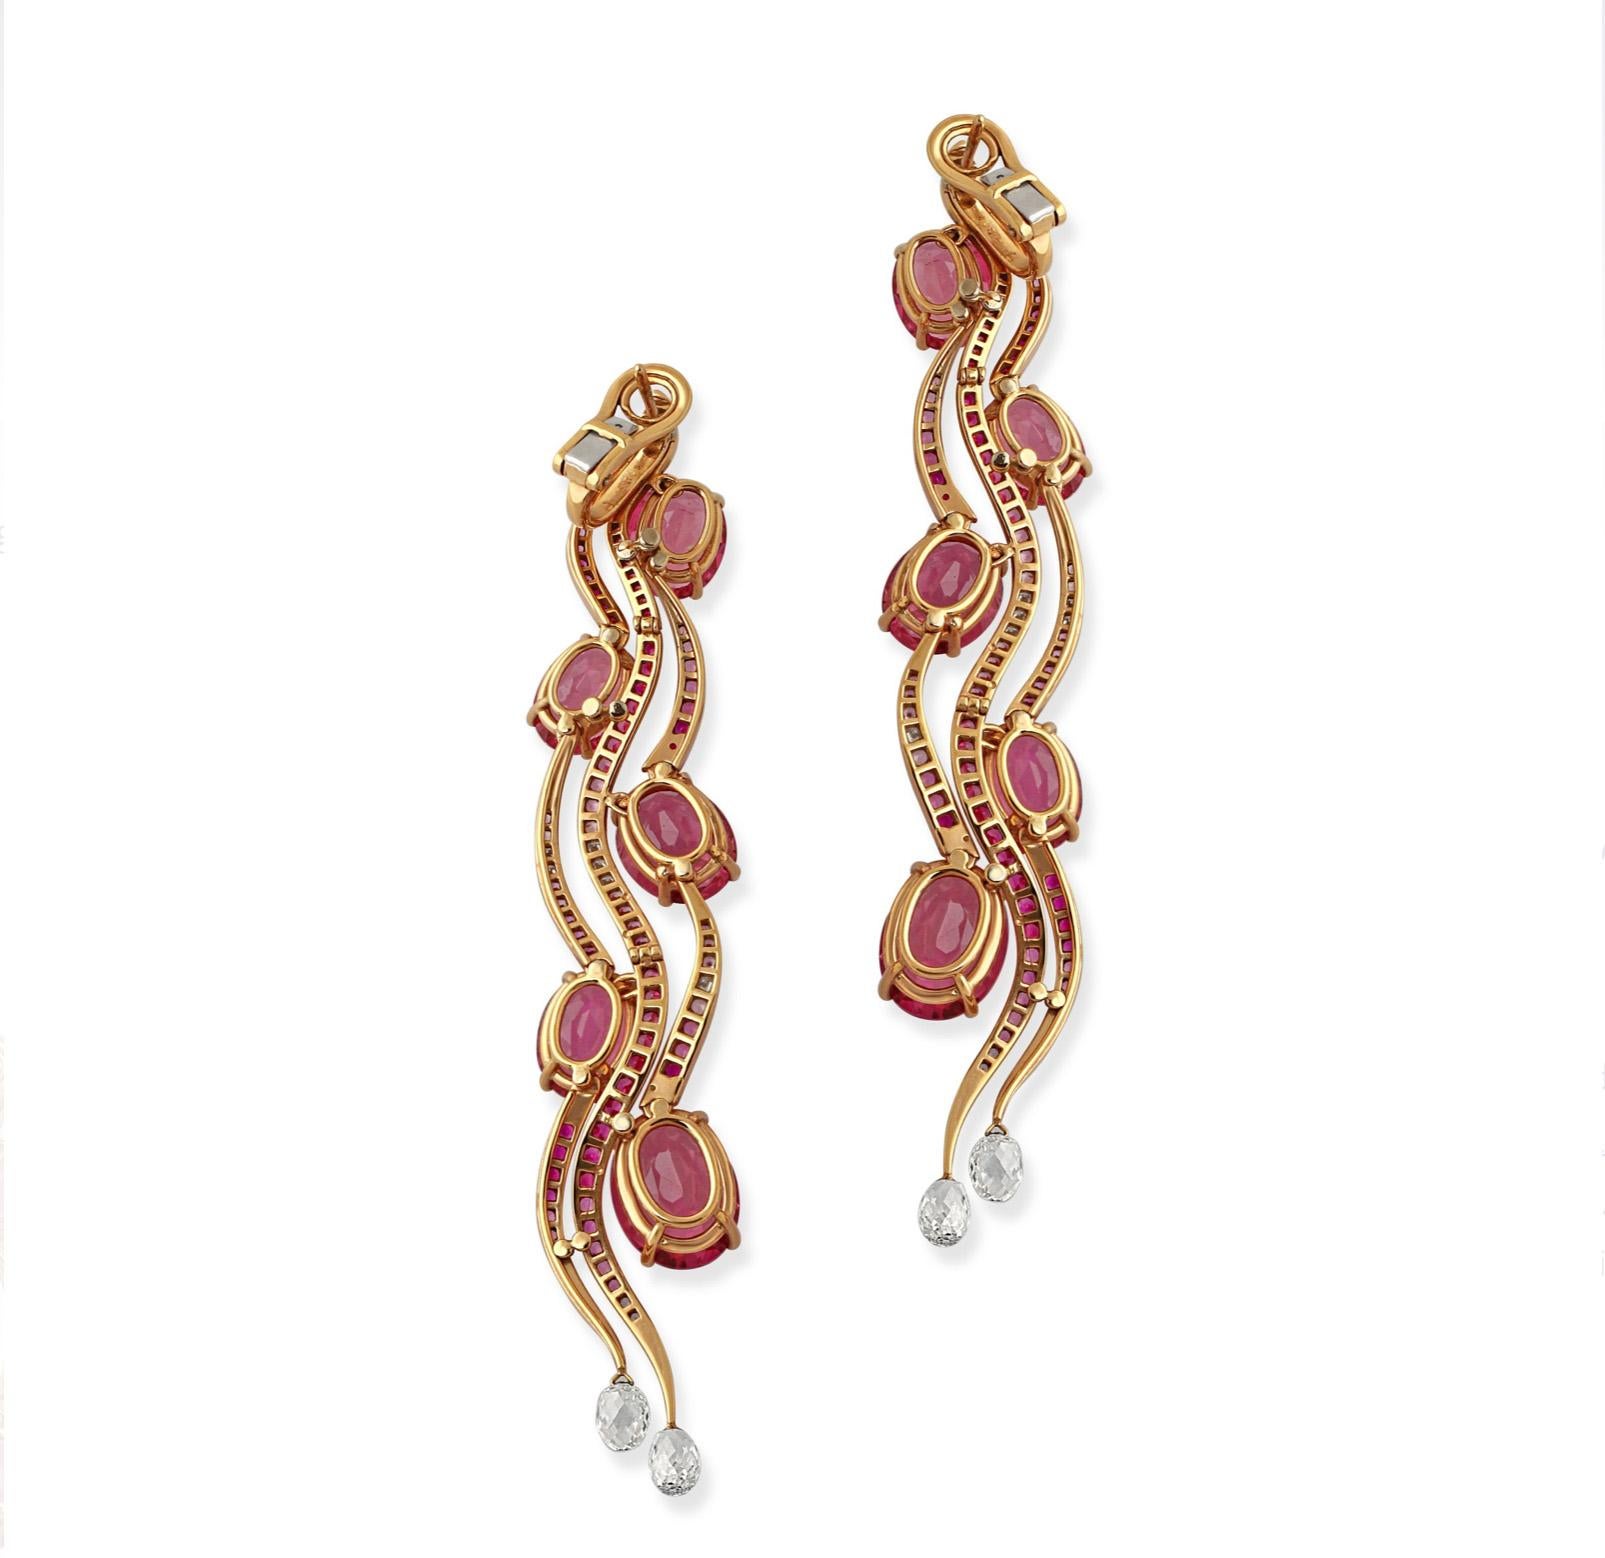 Ein Paar Ohrringe aus 18 Karat Gelbgold mit rosa Turmalin und Diamanten von Chopard. Ein wunderschönes Designerstück, das Chopard für die Red Carpet-Kollektion entworfen hat, die jedes Jahr bei den Filmfestspielen in Cannes vorgestellt wird. Diese